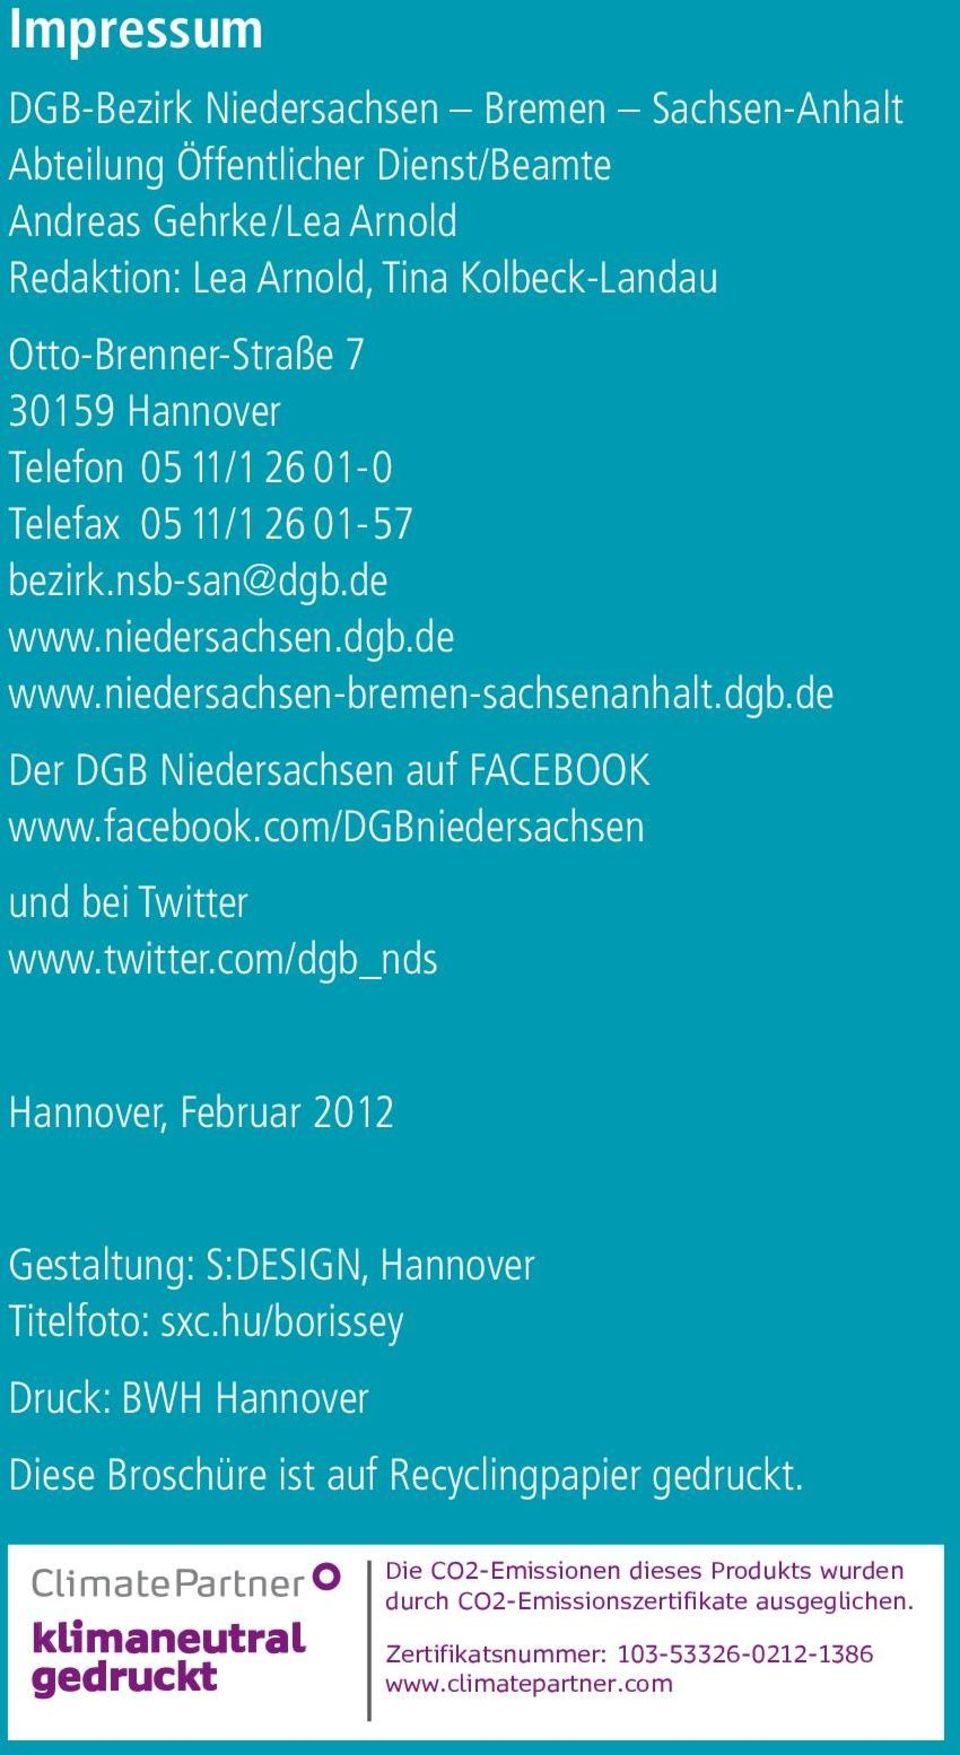 com/dgbniedersachsen und bei Twitter www.twitter.com/dgb_nds Hannover, Februar 2012 Gestaltung: S:DESIGN, Hannover Titelfoto: sxc.